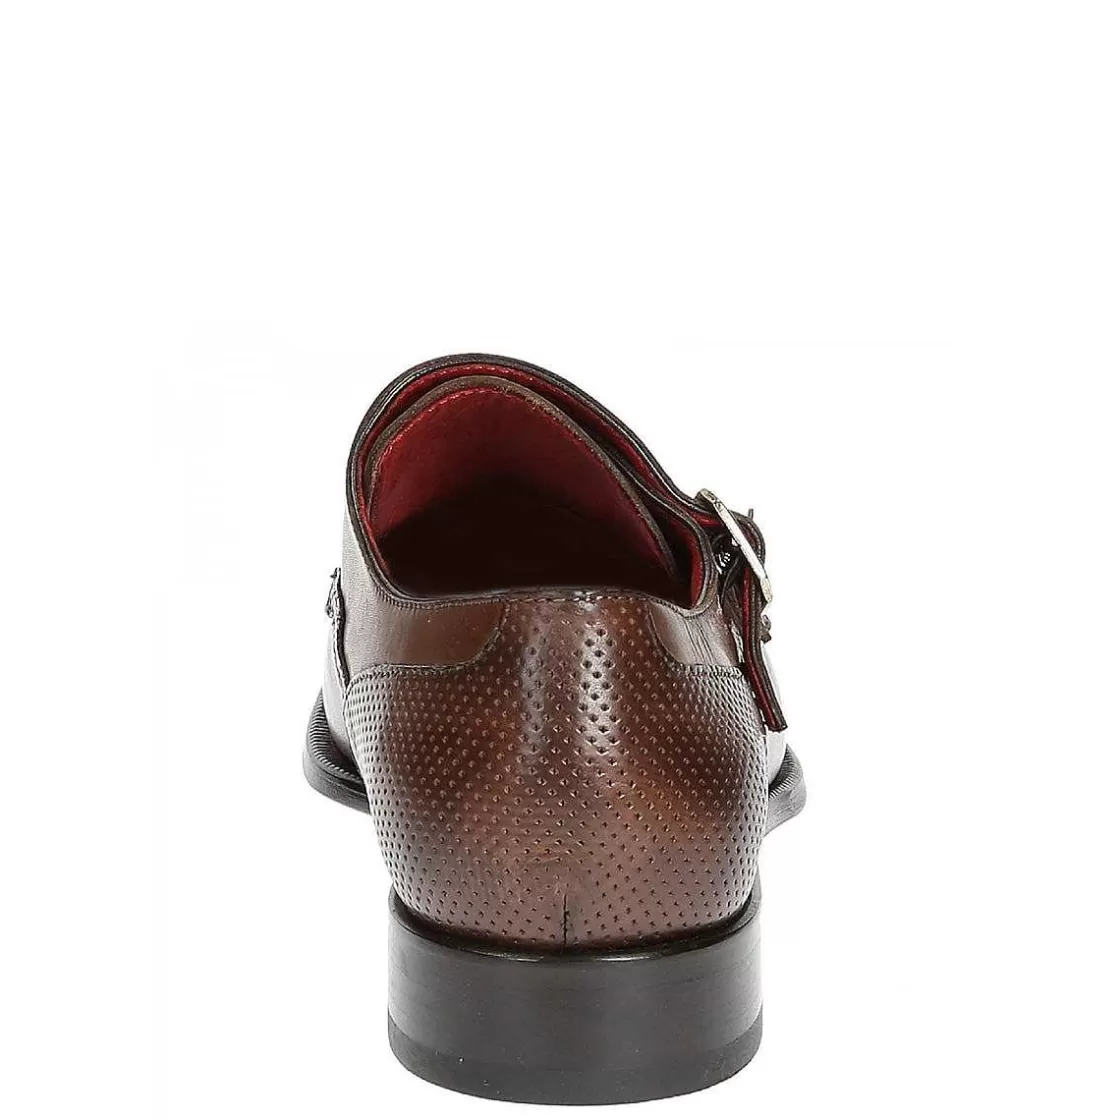 Leonardo Men'S Double Buckle Shoes In Brandy Leather Online